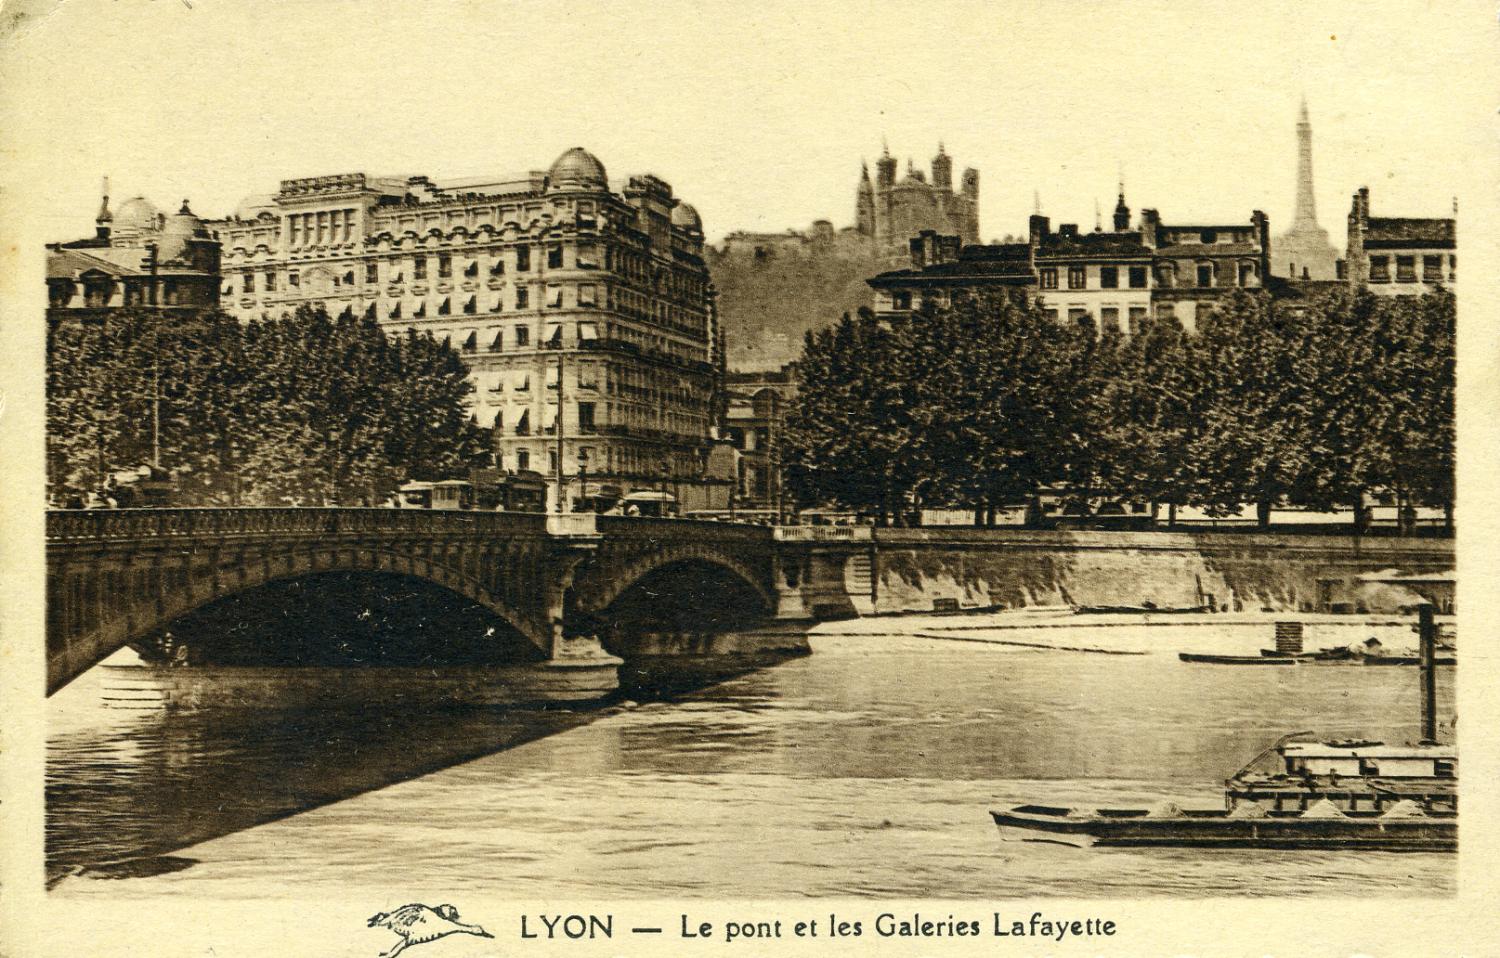 Lyon - Le pont et les Galeries Lafayette